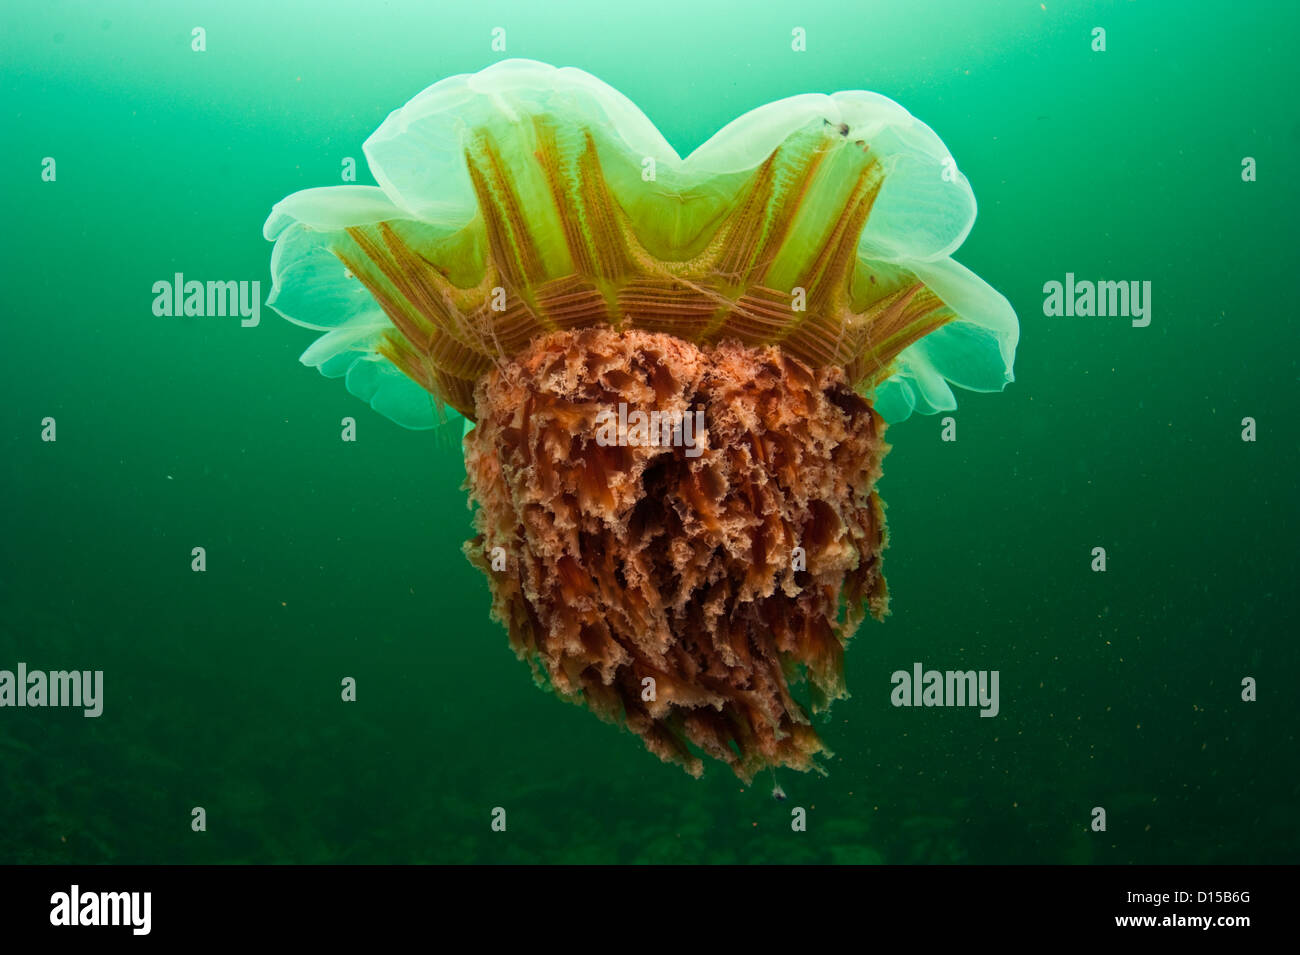 Leone la criniera meduse, Cyanea capillata, nuota nel verde scuro acque dell'isola di Vancouver, British Columbia, Canada. Foto Stock